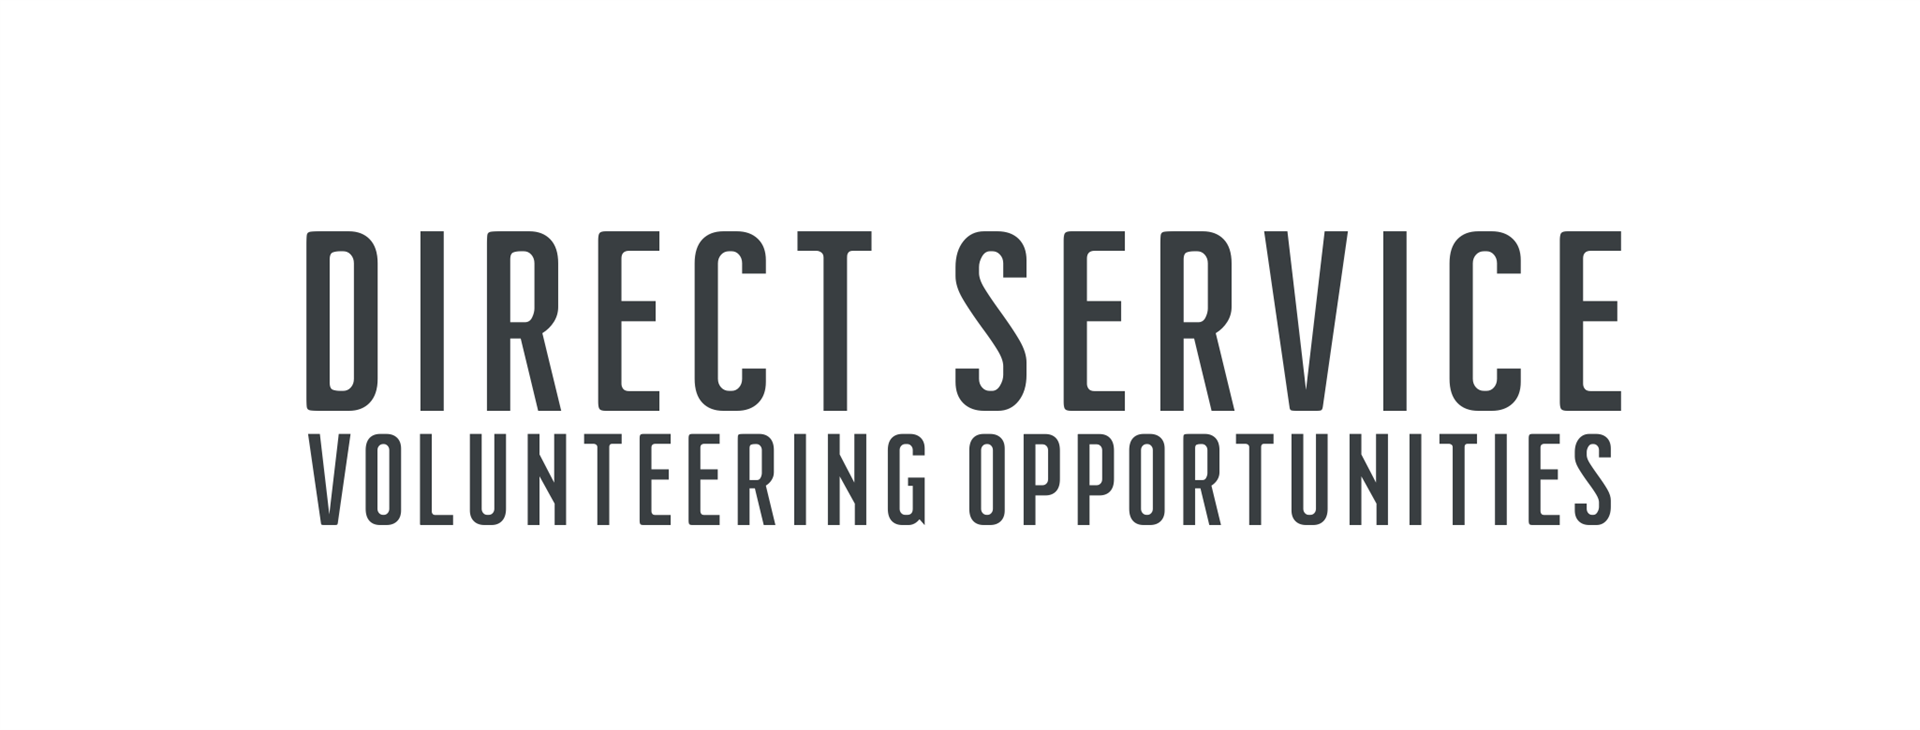 Direct Service Volunteering Opportunities